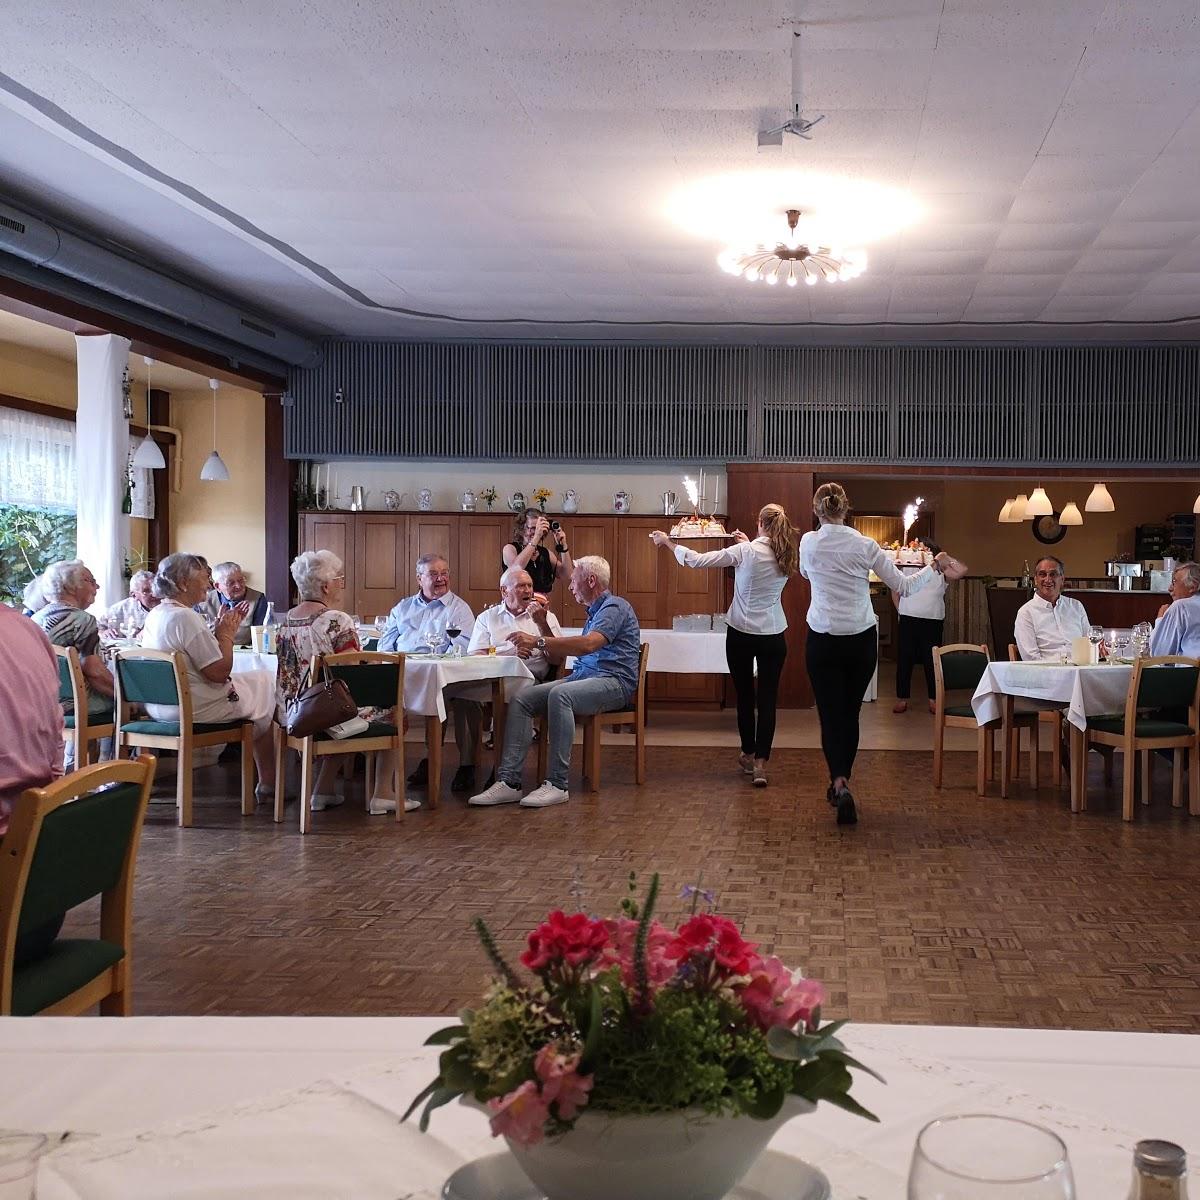 Restaurant "Gasthof Voß Gaststätte" in Schmalensee